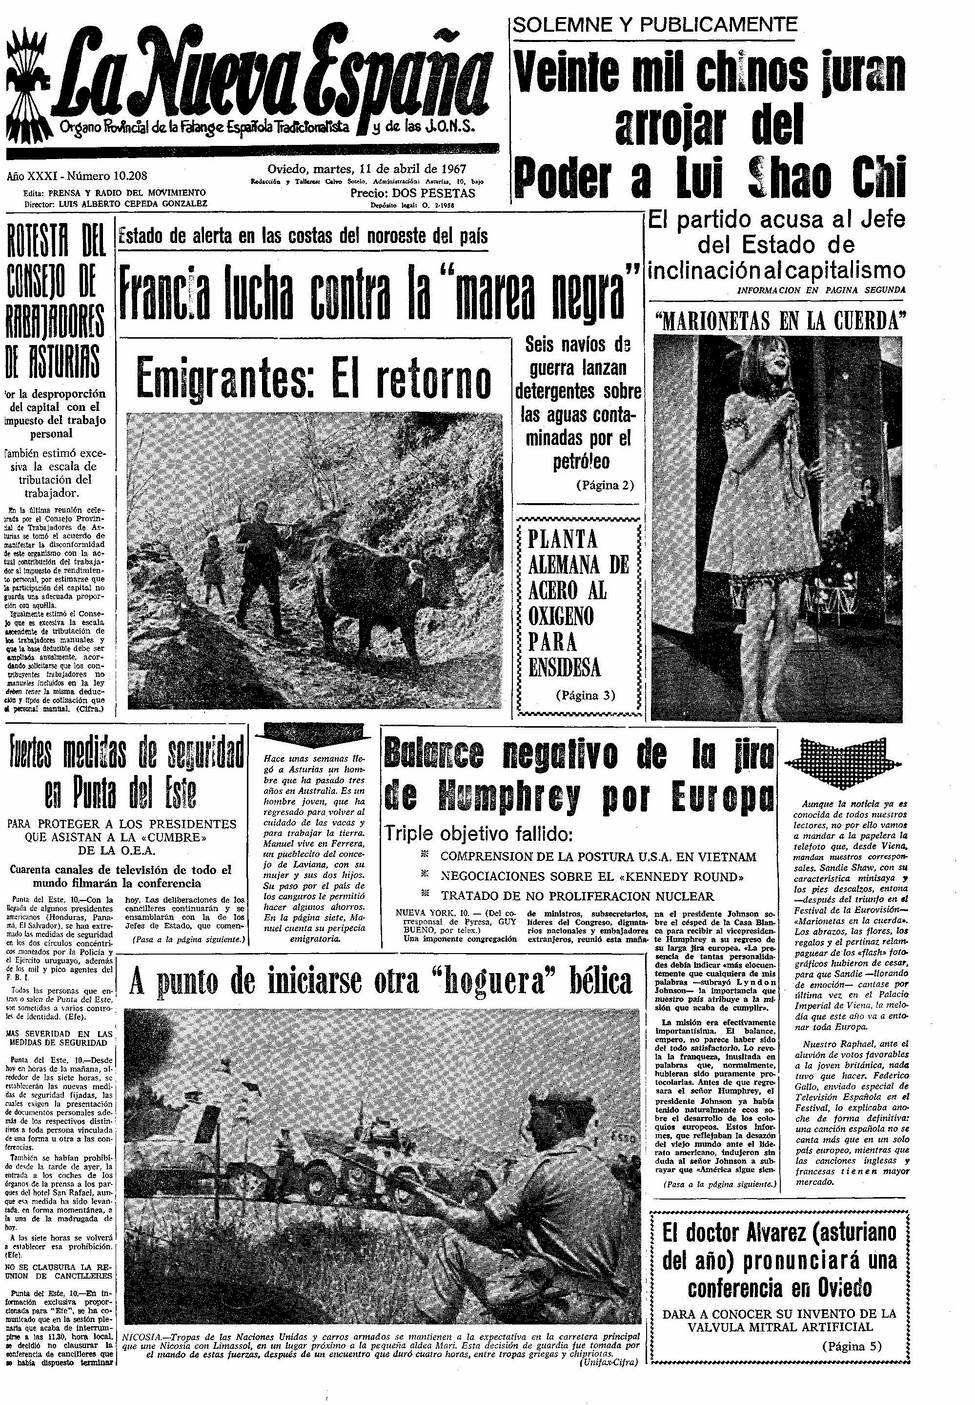 Portada del Martes, 11 de Abril de 1967